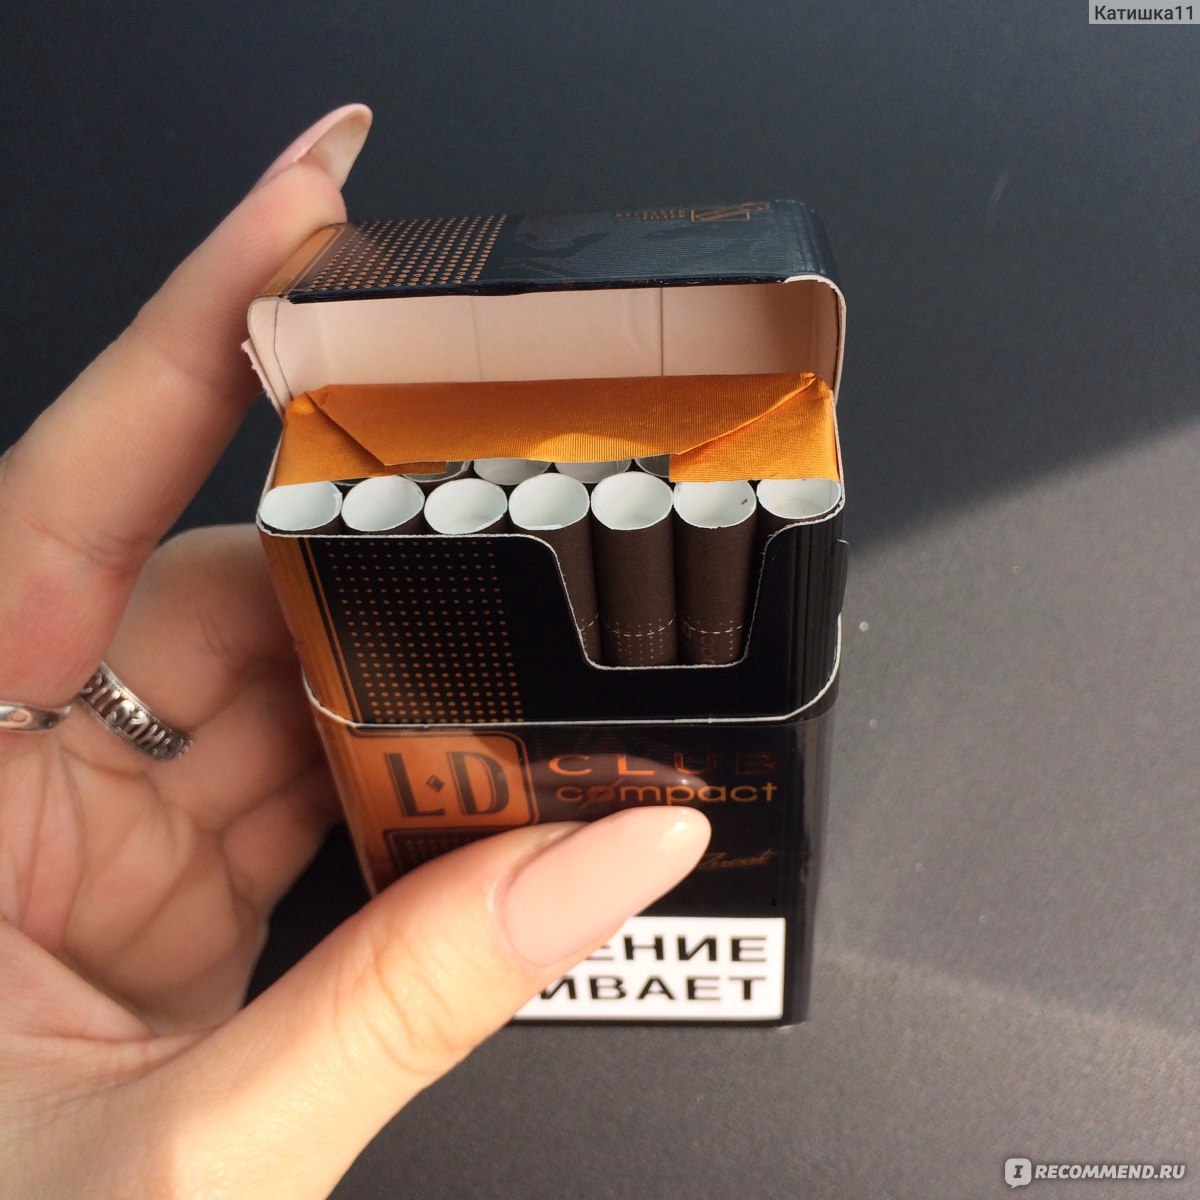 Пачка сигарет шоколадные. Japan Tobacco сигареты. LD шоколадные сигареты. Коричневые сигареты. Сигареты коричневые тонкие.